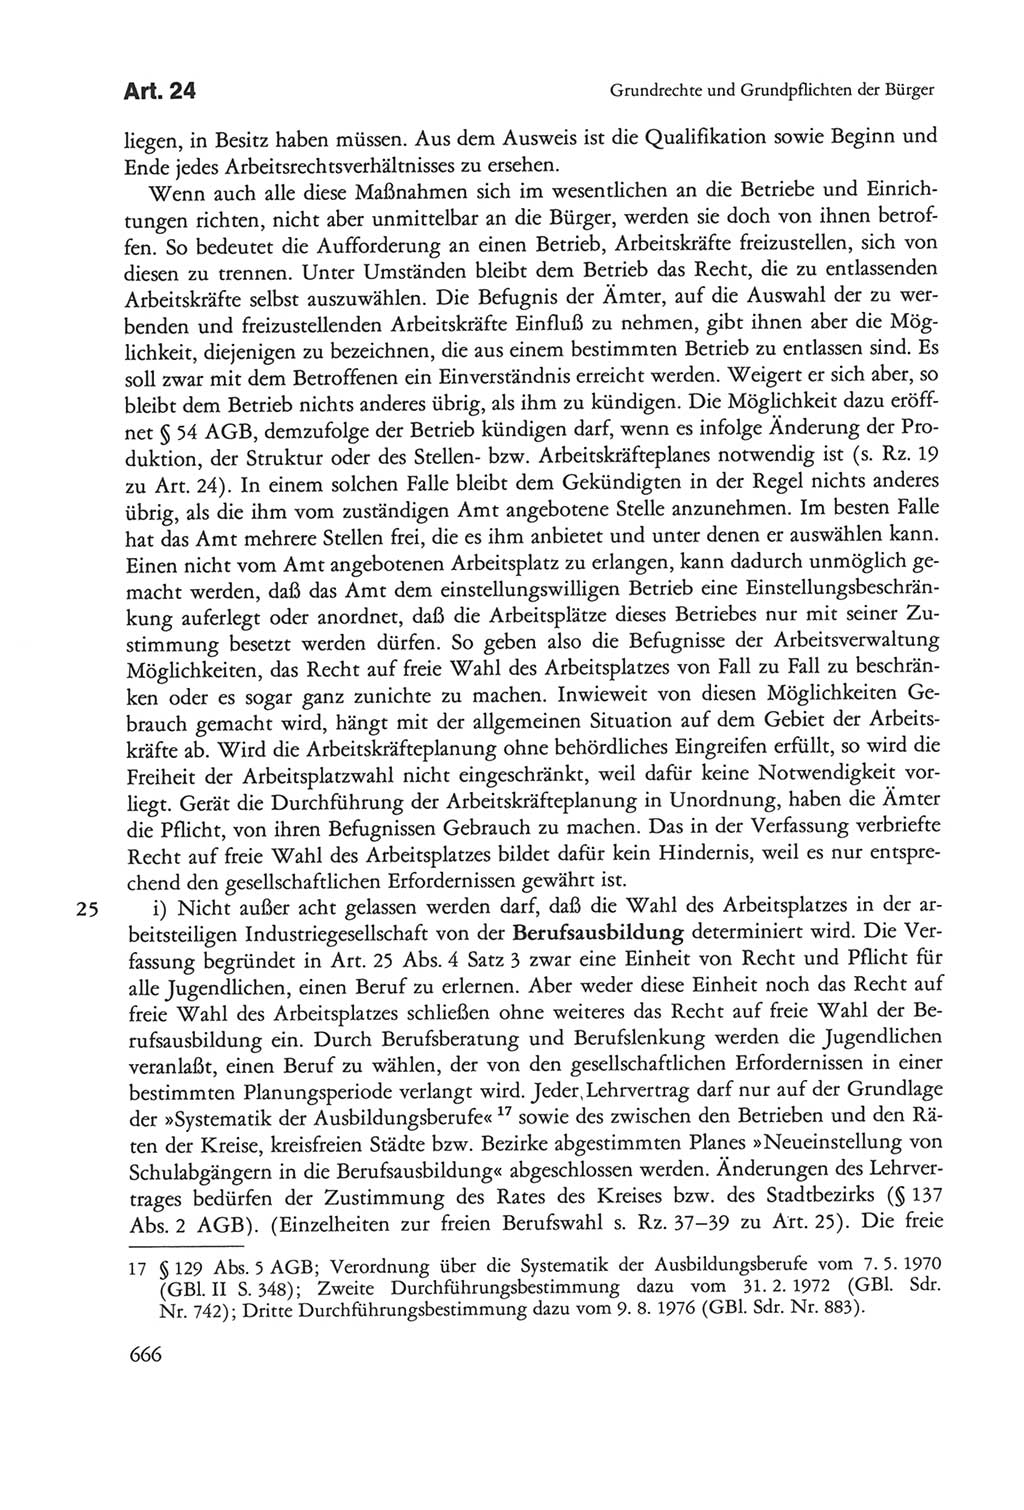 Die sozialistische Verfassung der Deutschen Demokratischen Republik (DDR), Kommentar 1982, Seite 666 (Soz. Verf. DDR Komm. 1982, S. 666)